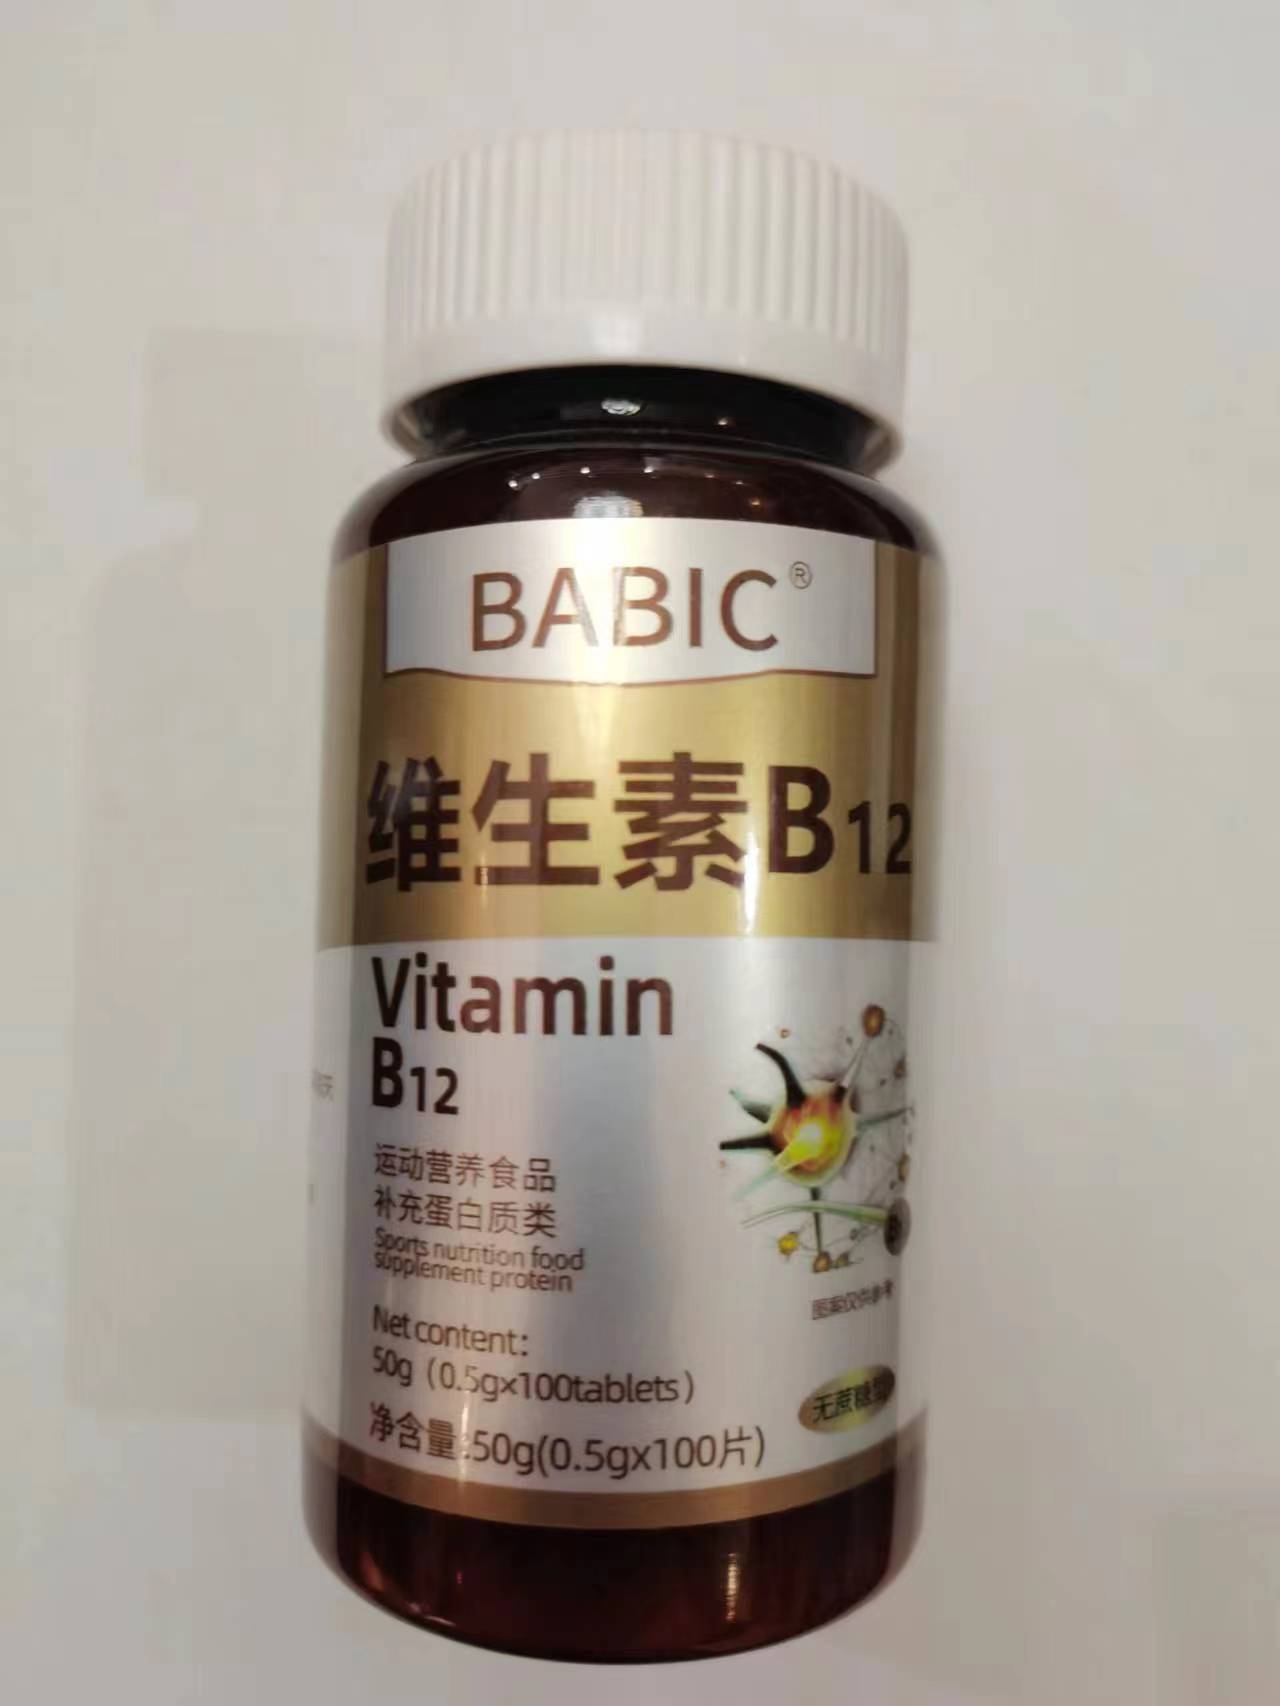 限量促销买1发2瓶BABIC维生素B12VitaminB12运动营养食品补充蛋白